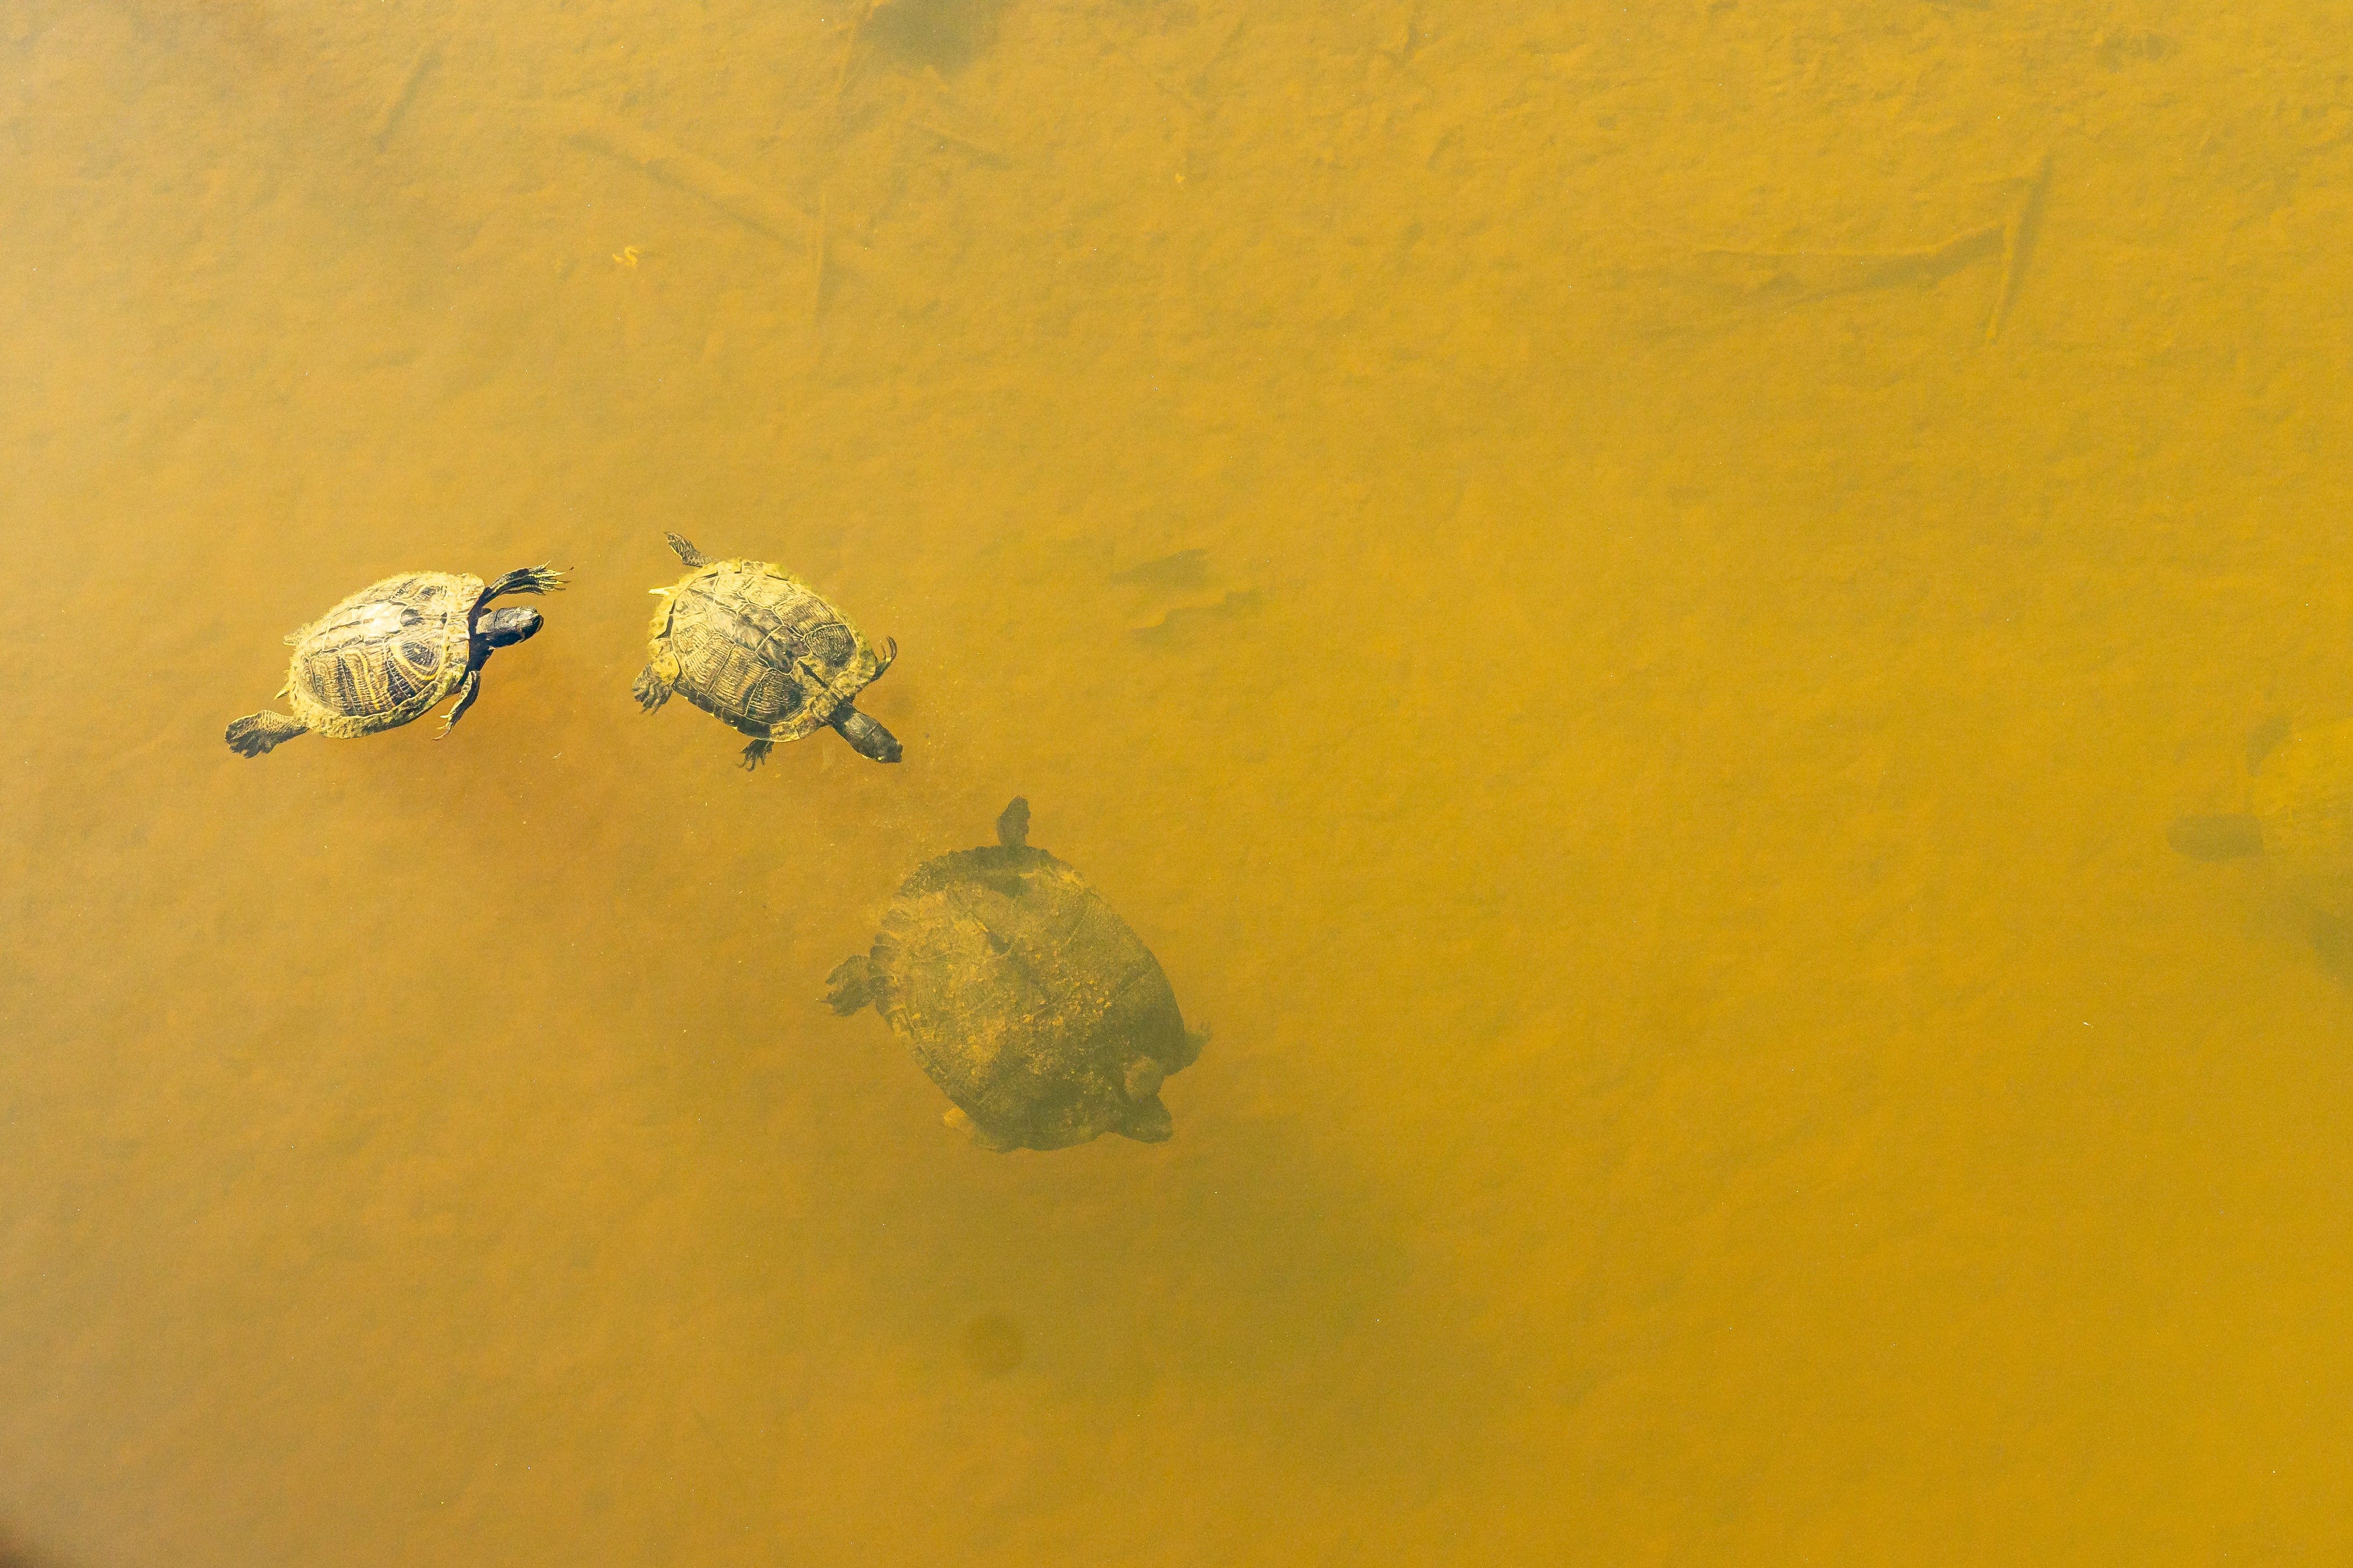 Drei Schildkröten. | Quelle: Pexels/ScottYounkin